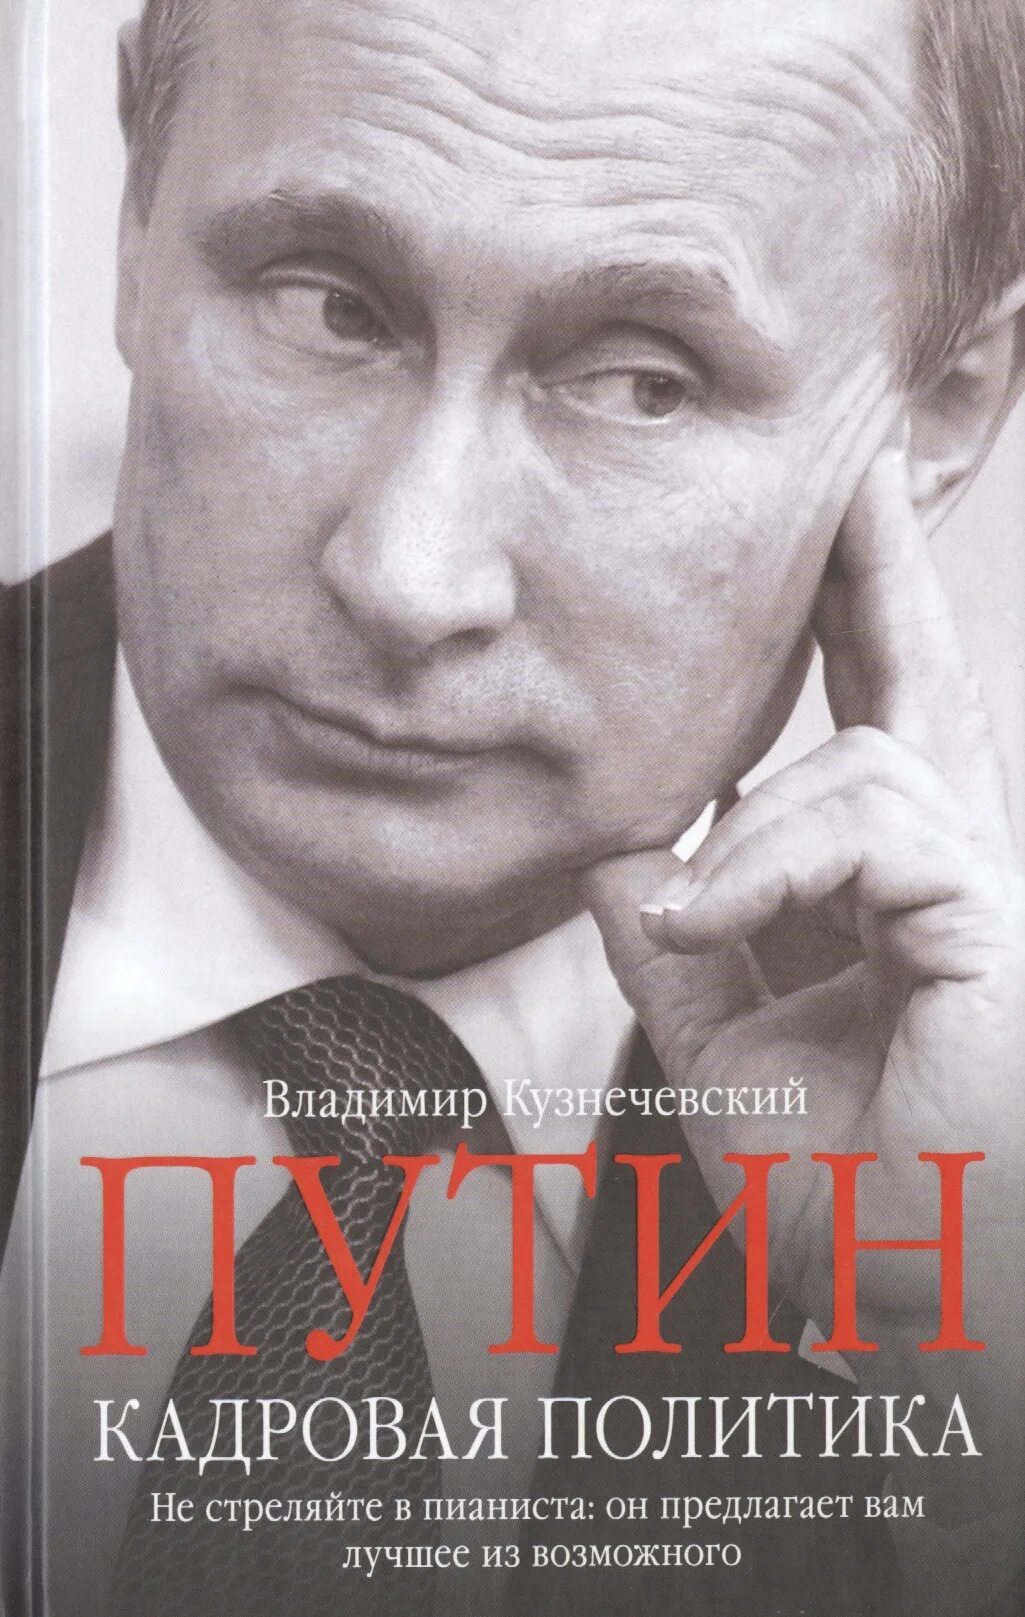 Книга о Путине. Книги про политику. Политика книга. Политические книги россия